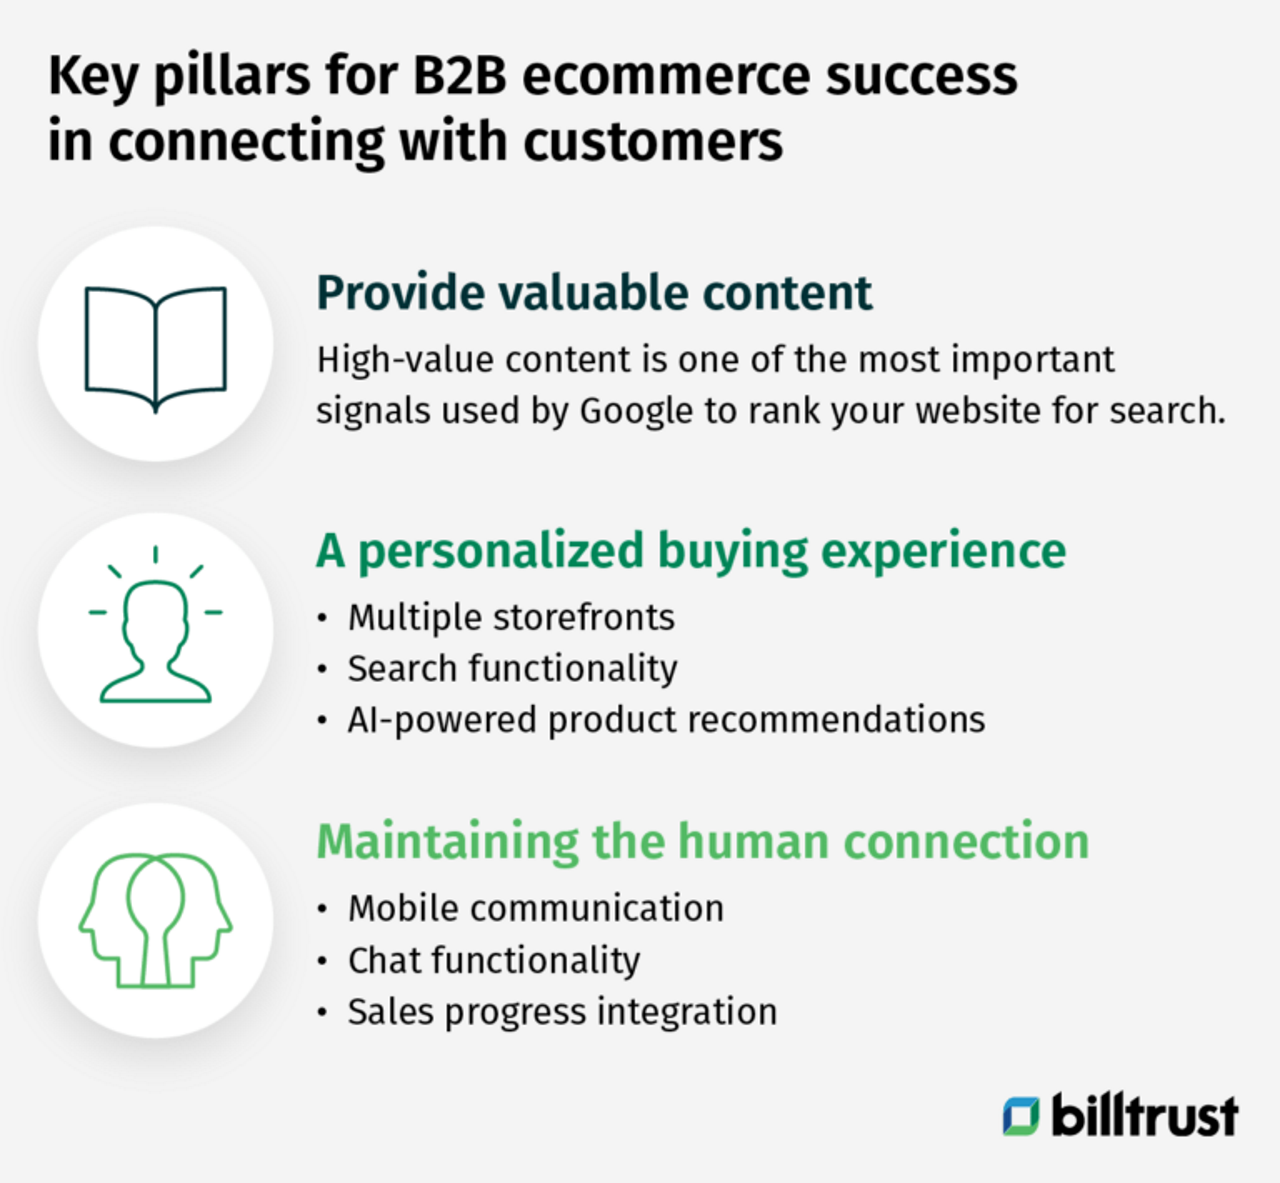 Afbeelding: de belangrijkste pijlers voor succesvolle B2B e-commerce voor klantenbinding